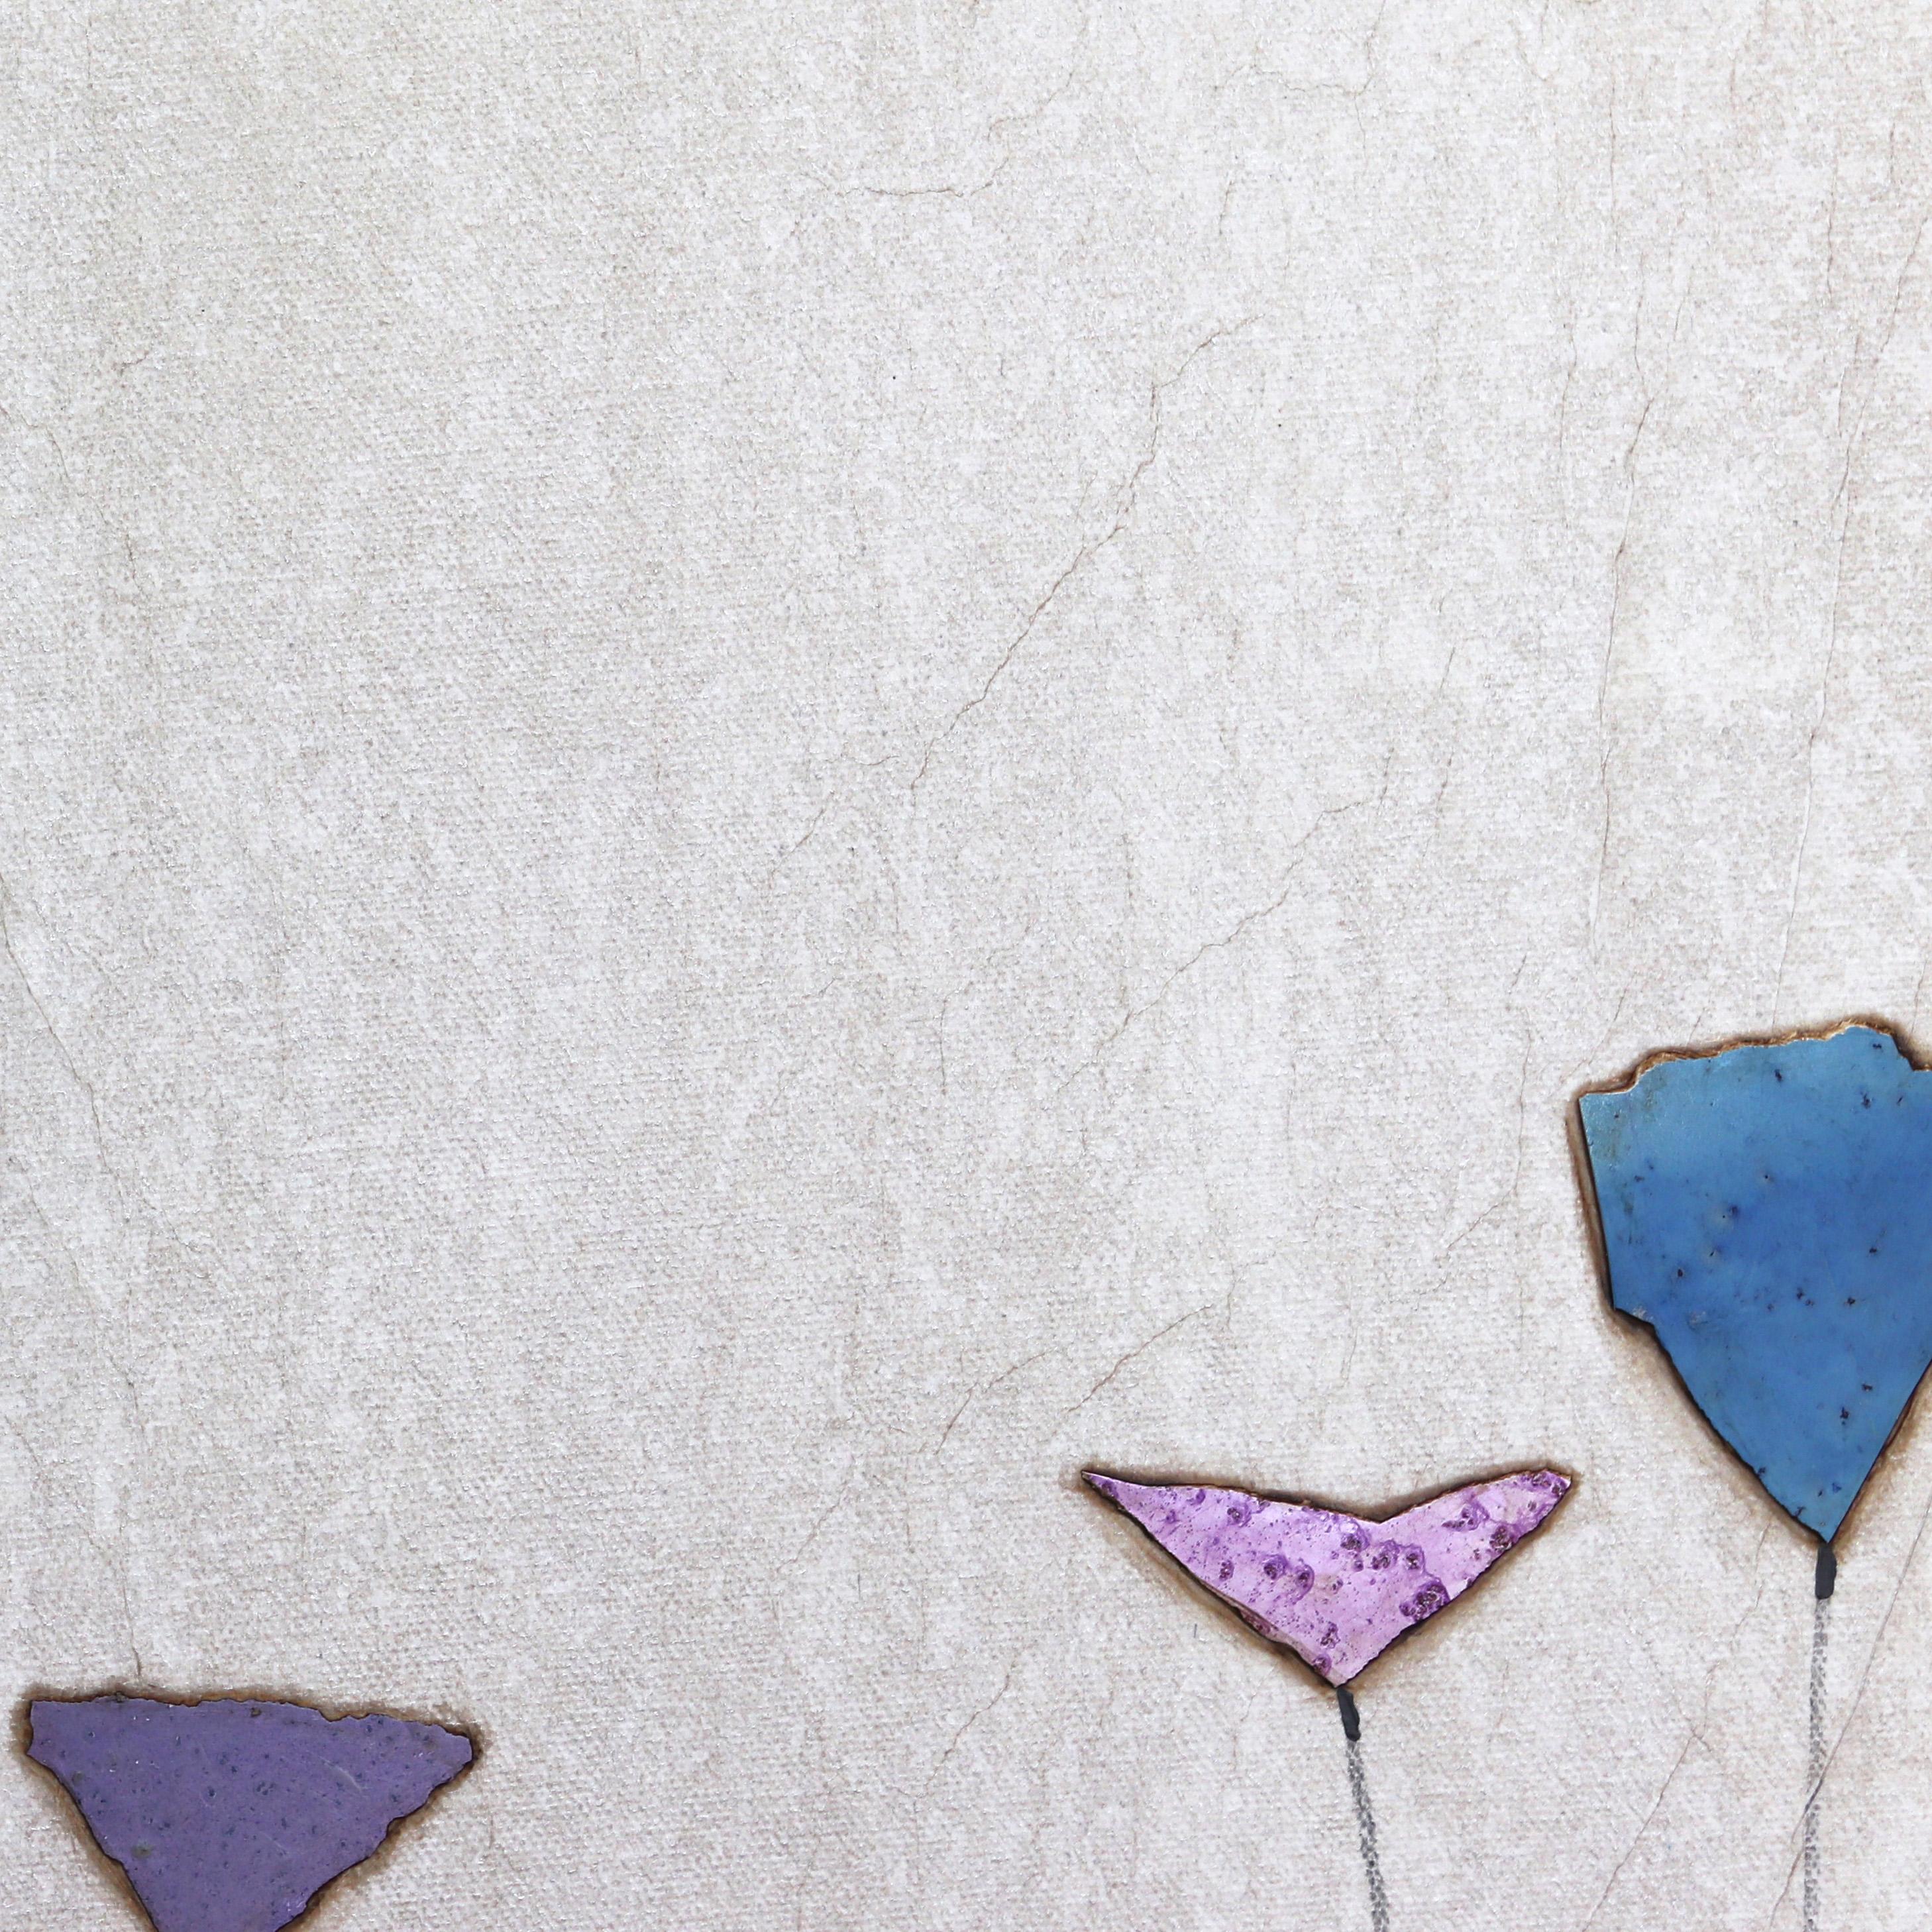 Die organische Ästhetik und die Texturen von Peter Kuttners originellen minimalistischen Boho-Kunstwerken sind das Ergebnis geduldiger Schichtung und einzigartiger Verwendung von Medien. Durch die Kombination von Collage und Farbe ist Kuttner in der